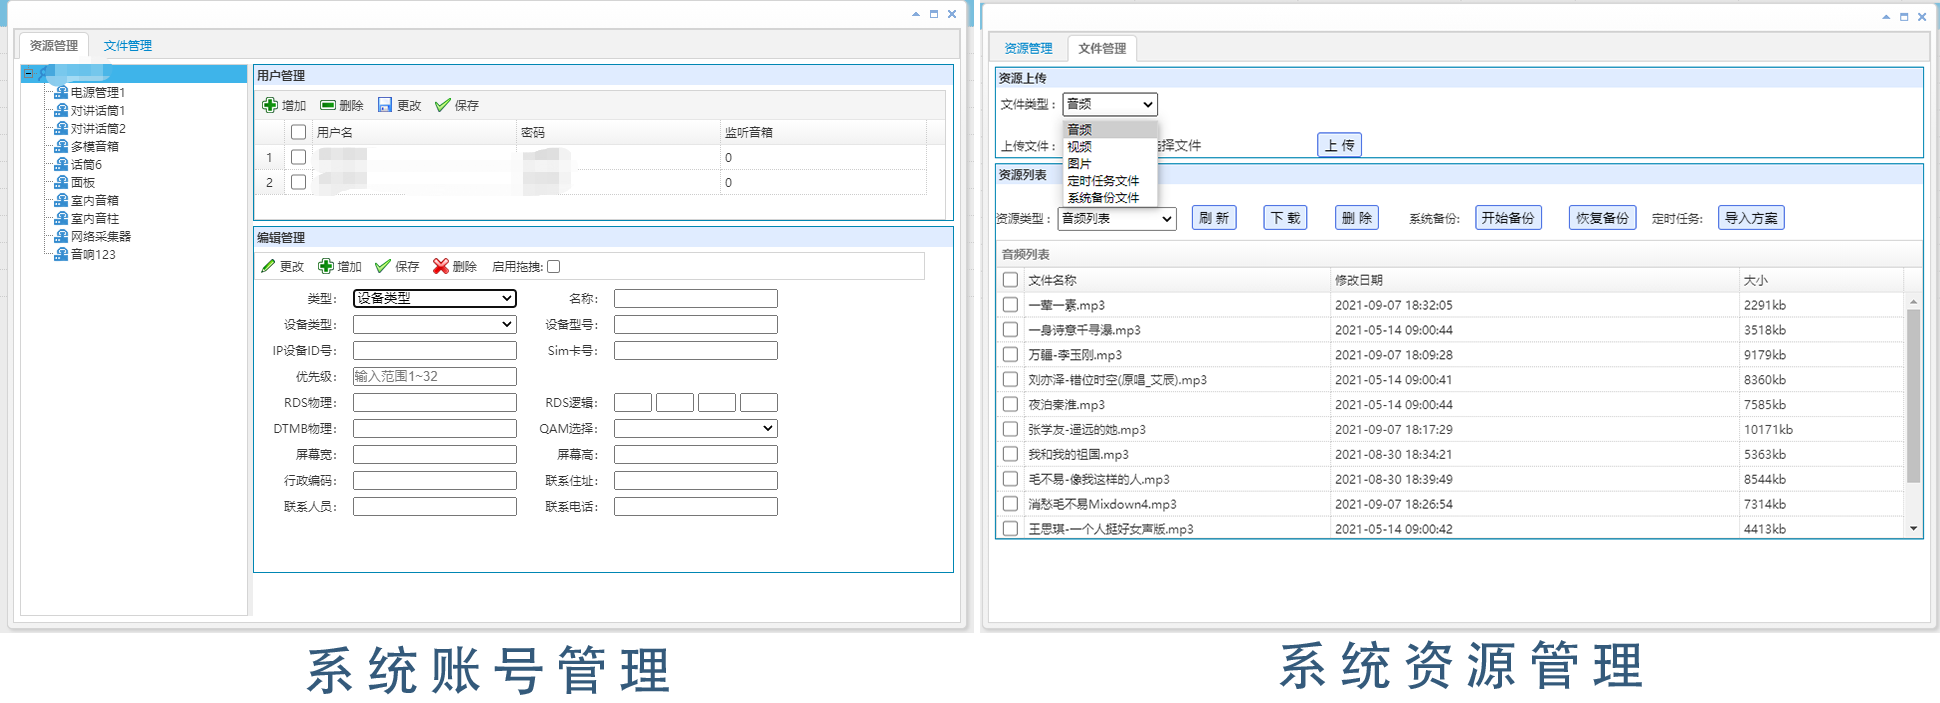 广州辉群IP数字网络广播平台管理软件之资源管理功能.png